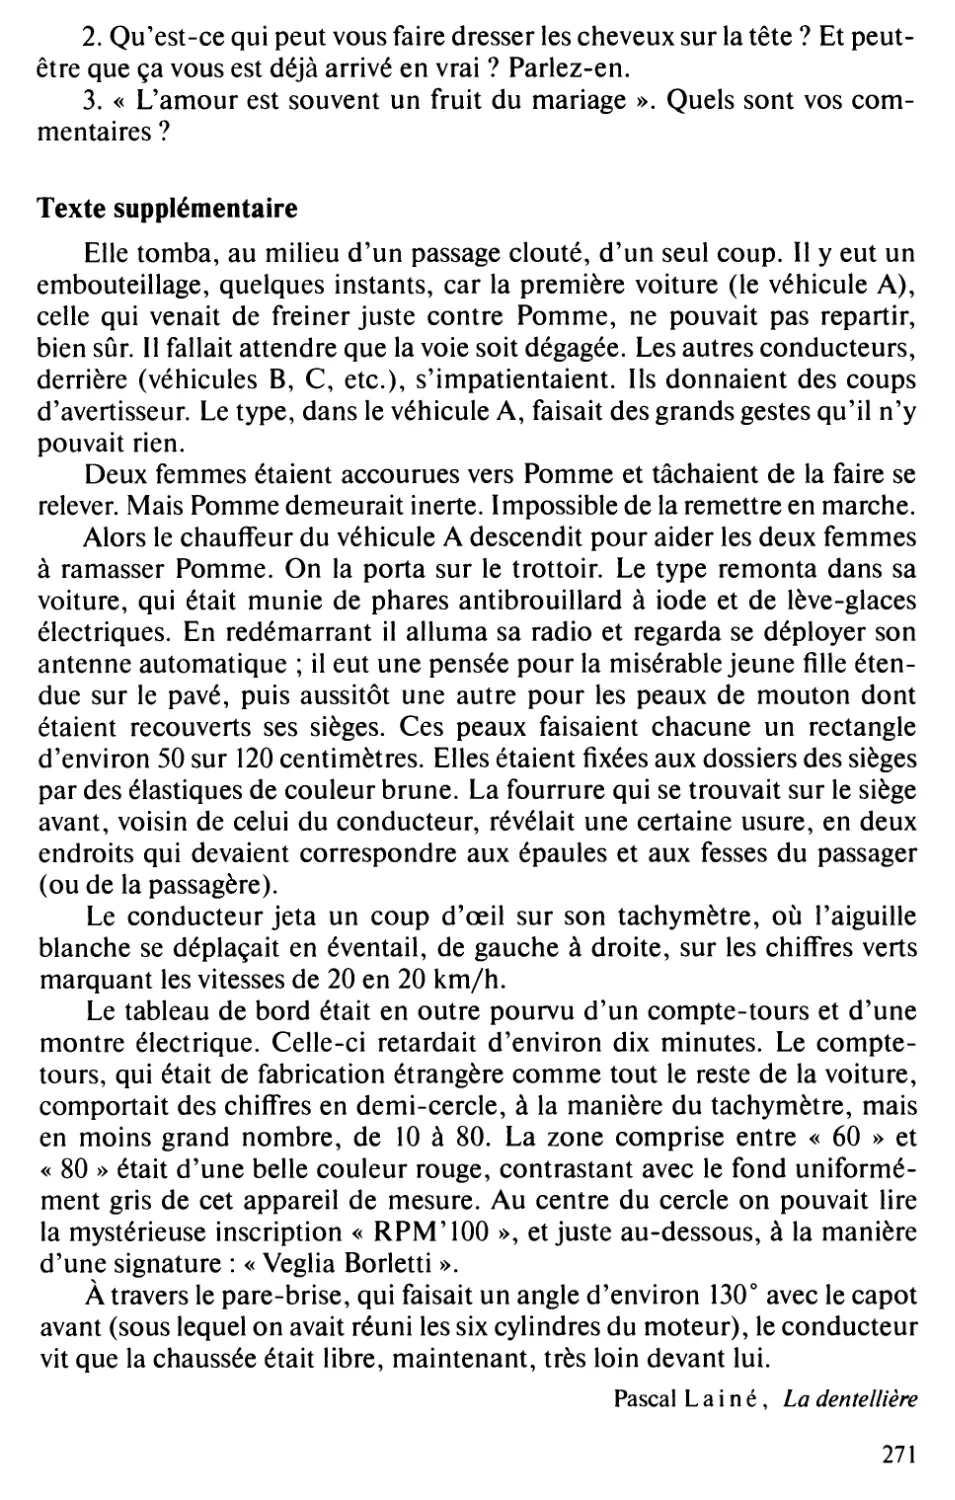 Texte supplémentaire : Pascal Lainé, La dentellière